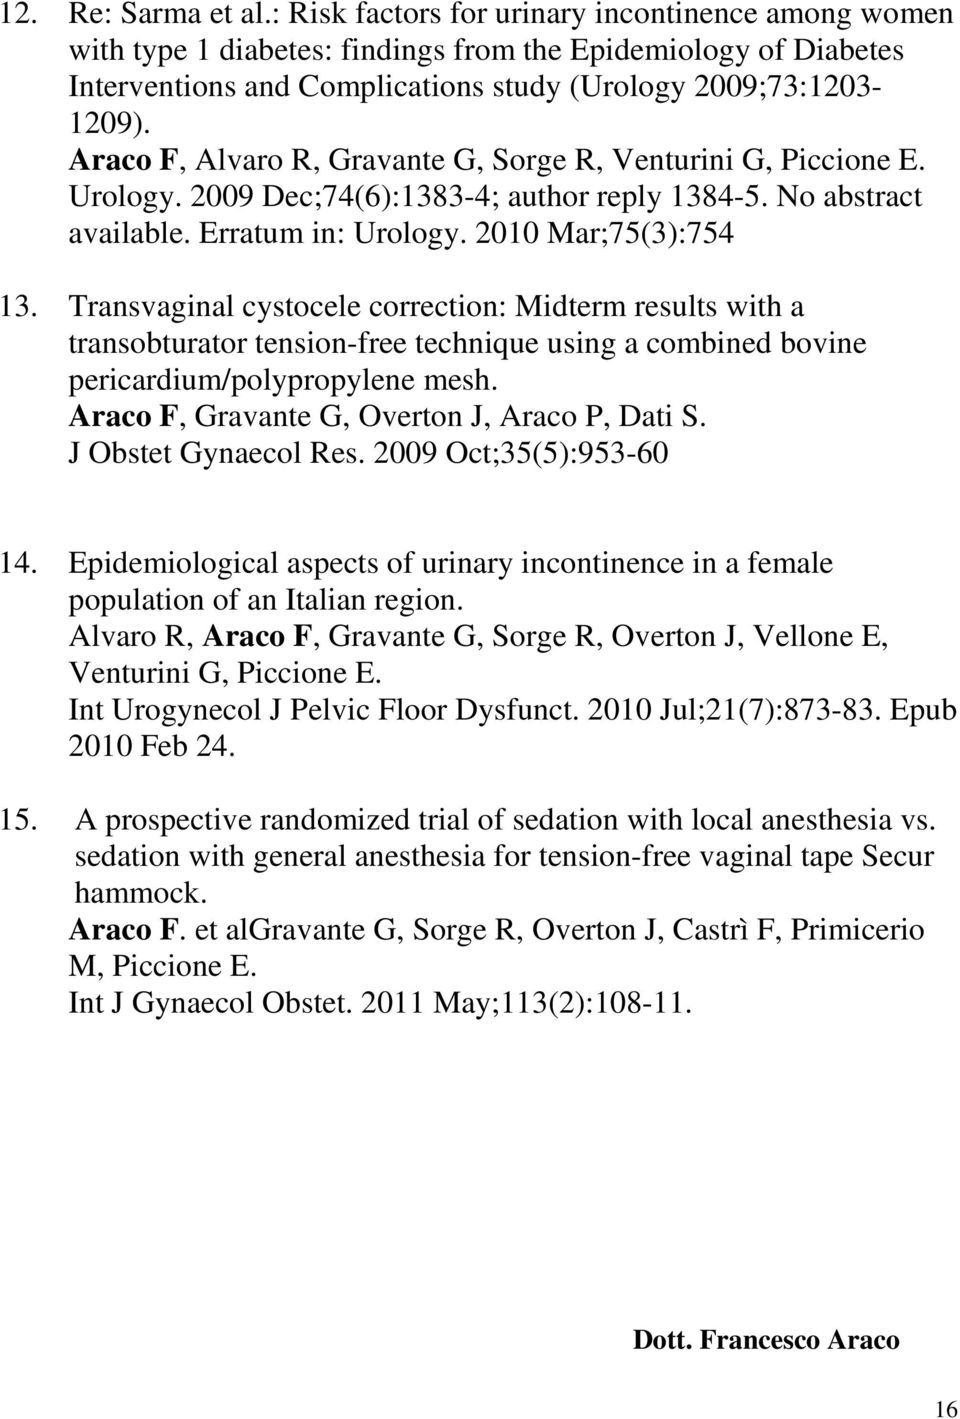 Araco F, Alvaro R, Gravante G, Sorge R, Venturini G, Piccione E. Urology. 2009 Dec;74(6):1383-4; author reply 1384-5. No abstract available. Erratum in: Urology. 2010 Mar;75(3):754 13.